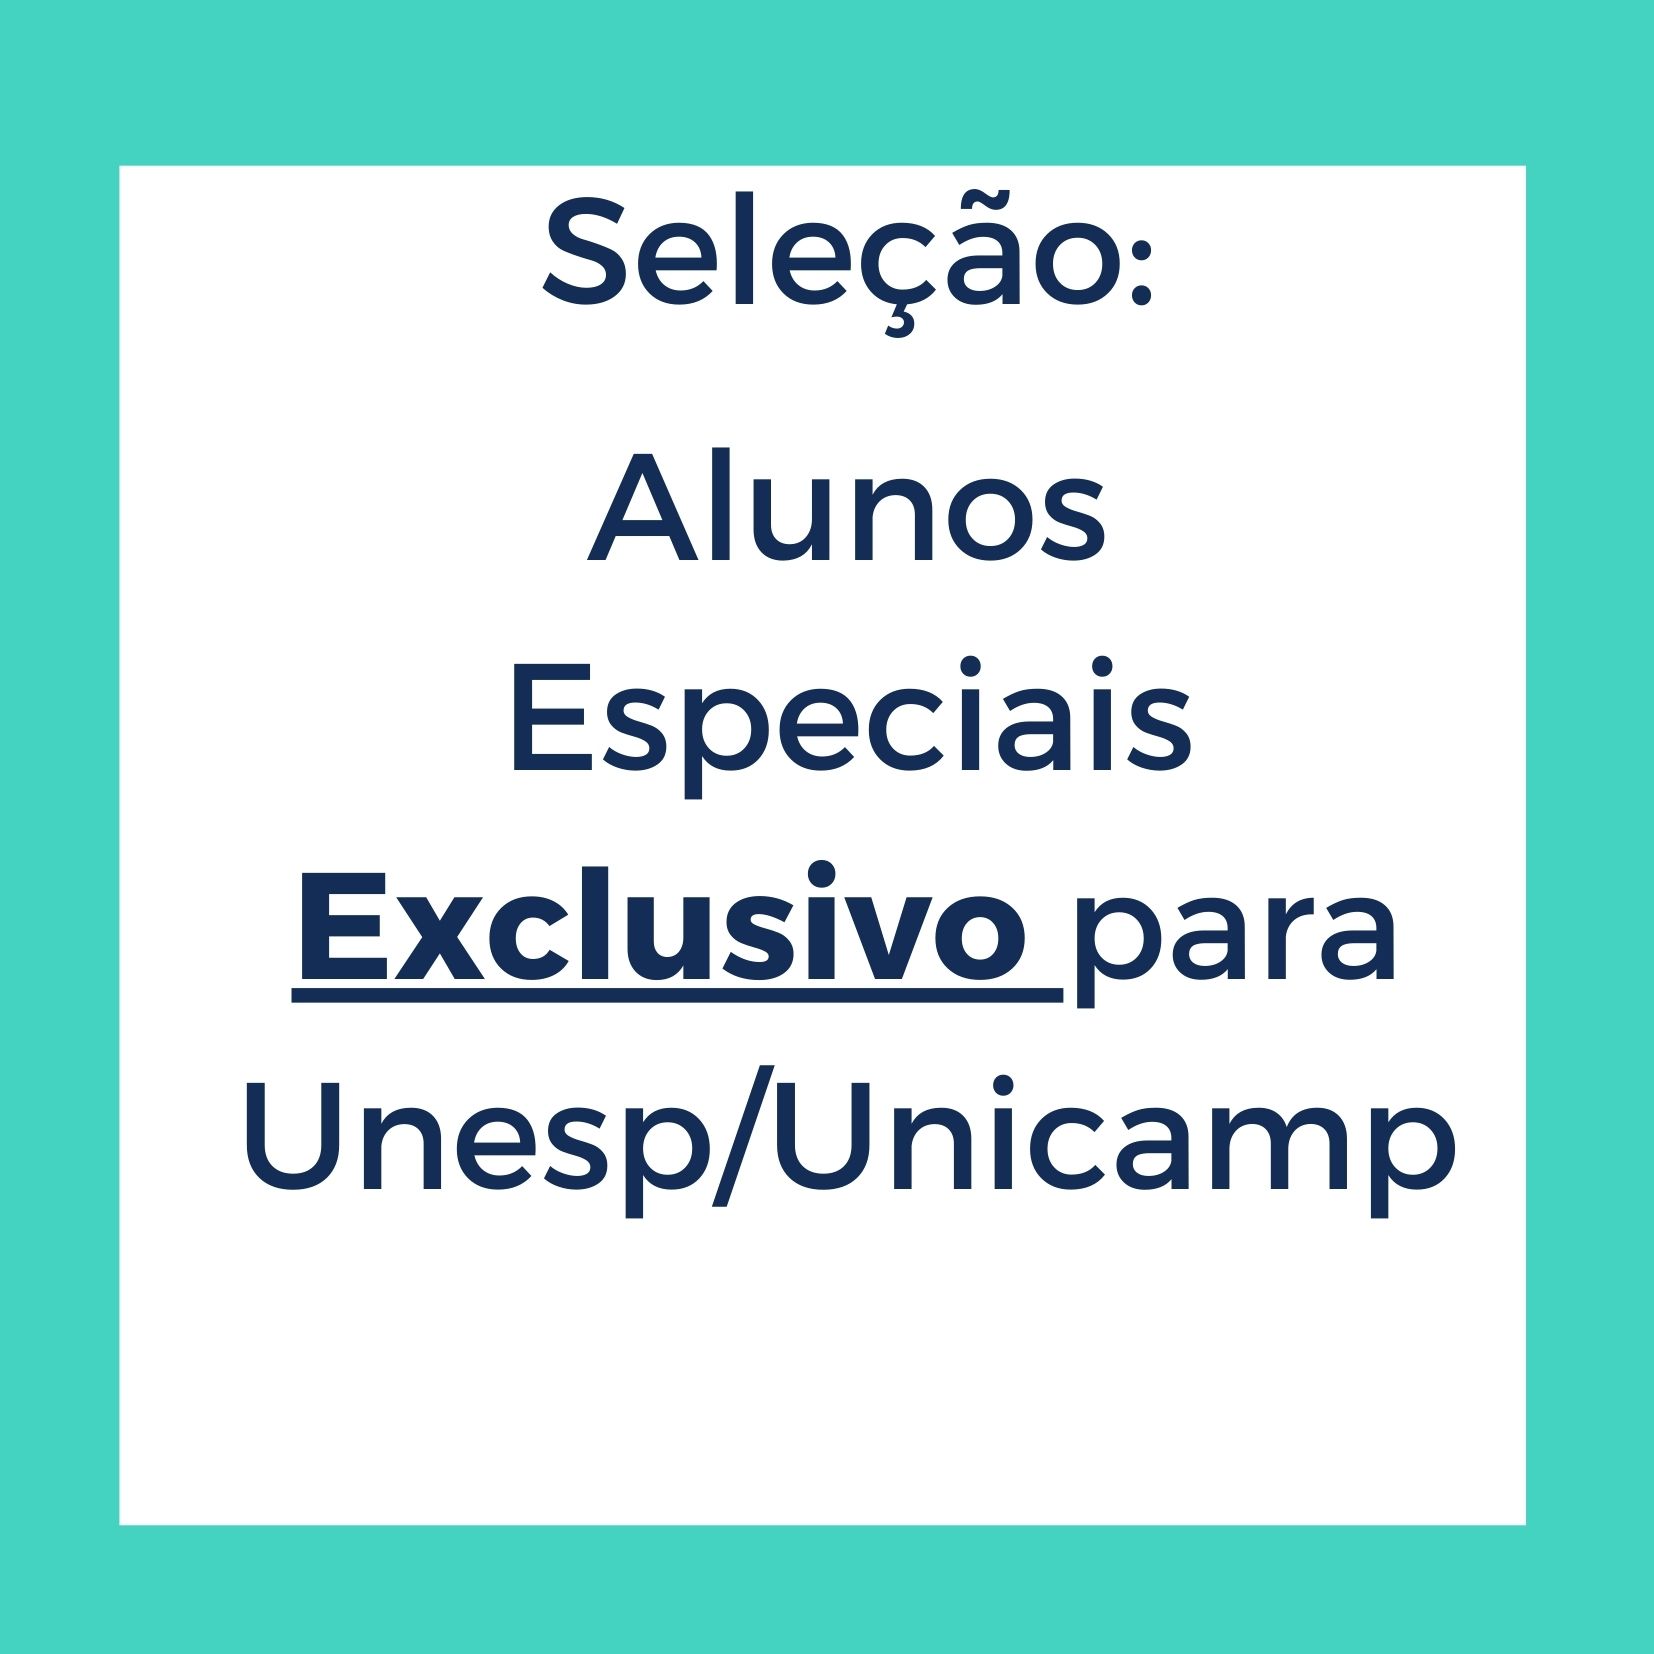 Seleção Alunos Especiais UNESP/UNICAMP - campo exclusivo